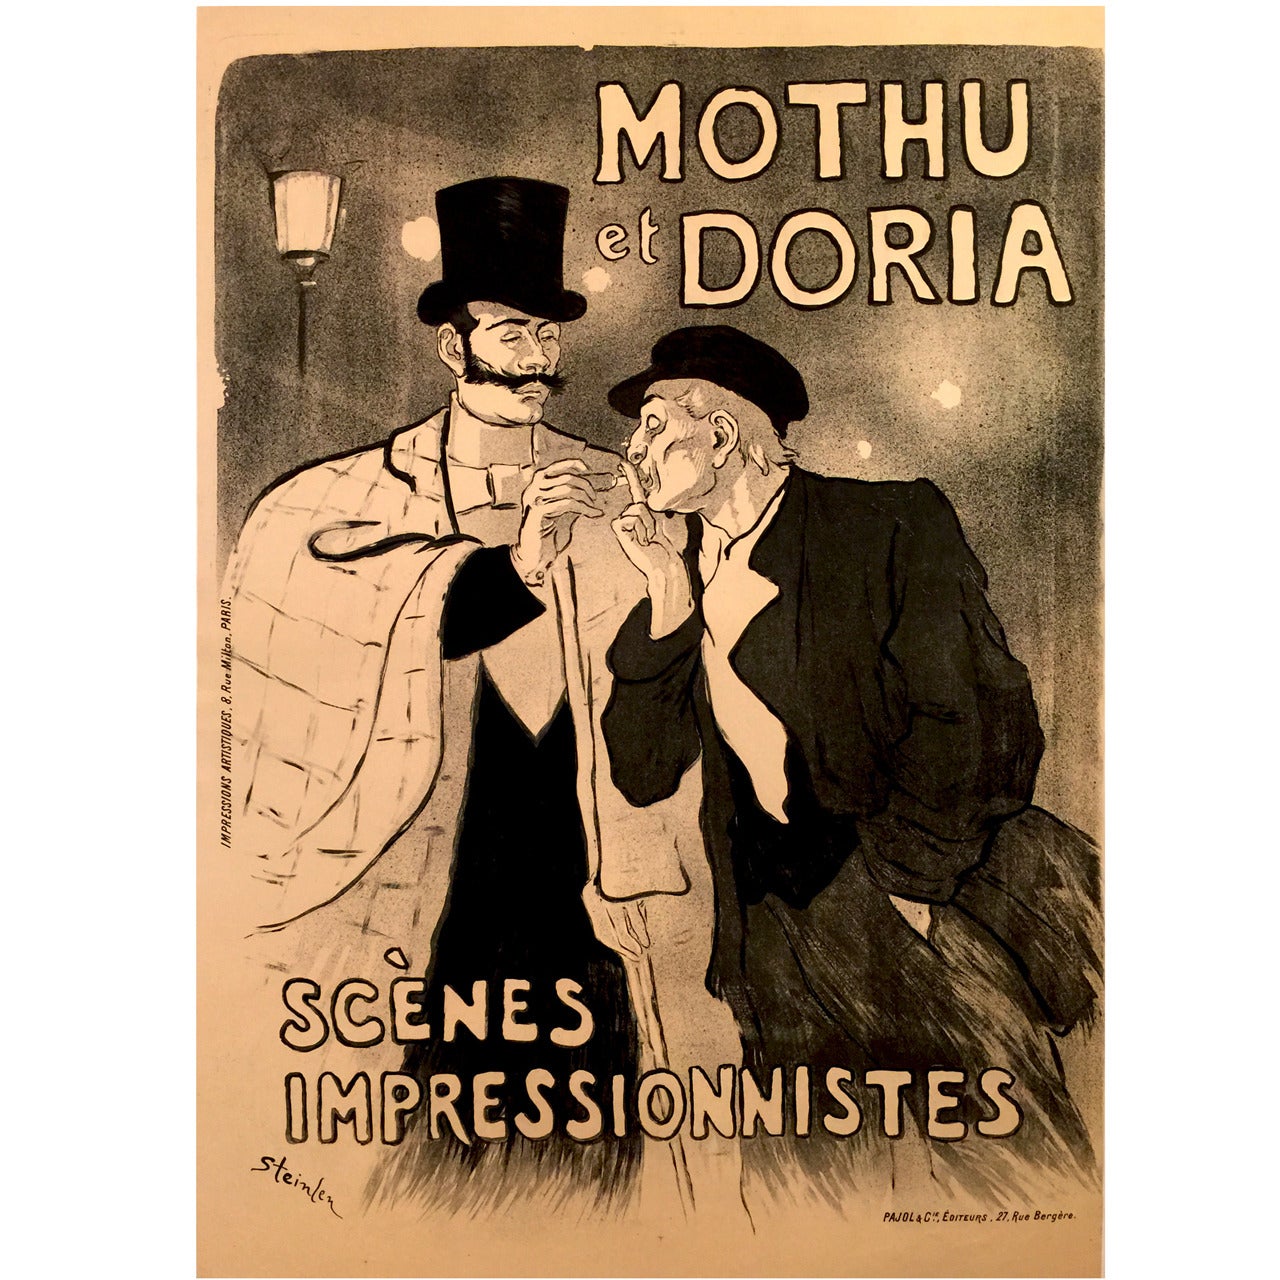 Original Mothu et Doria Poster by Theophile Steinlen, 1893